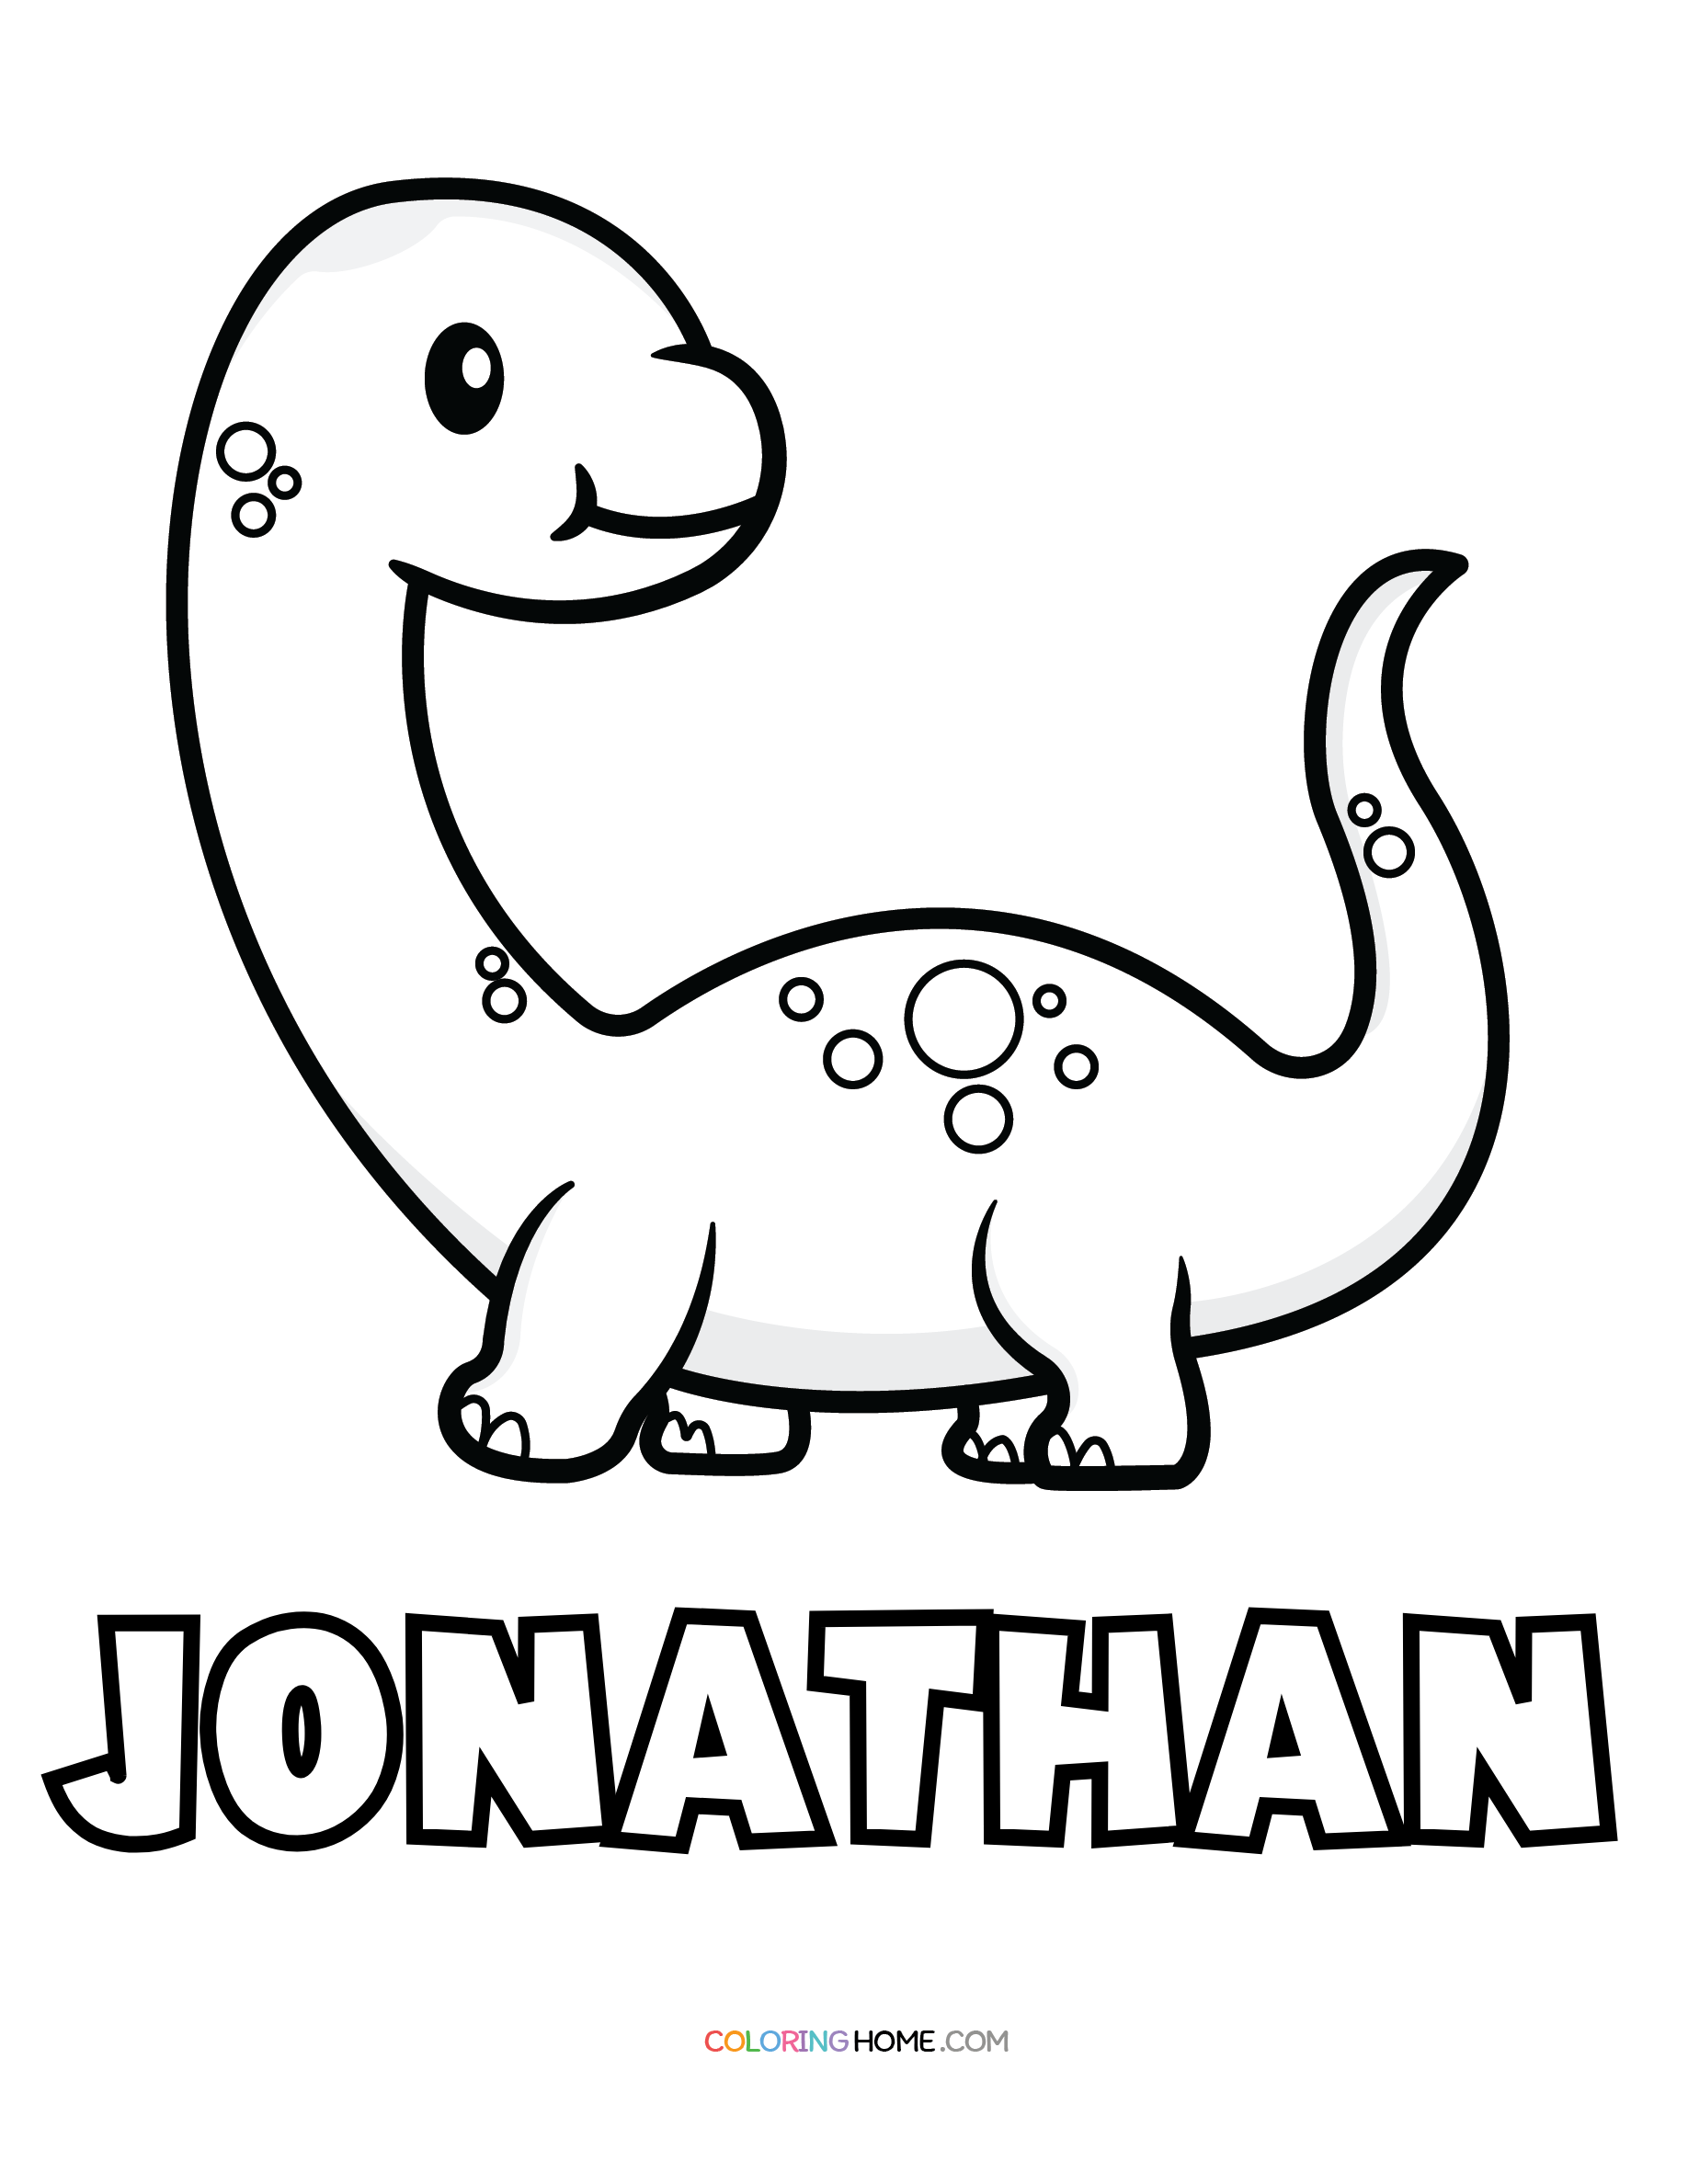 Jonathan dinosaur coloring page